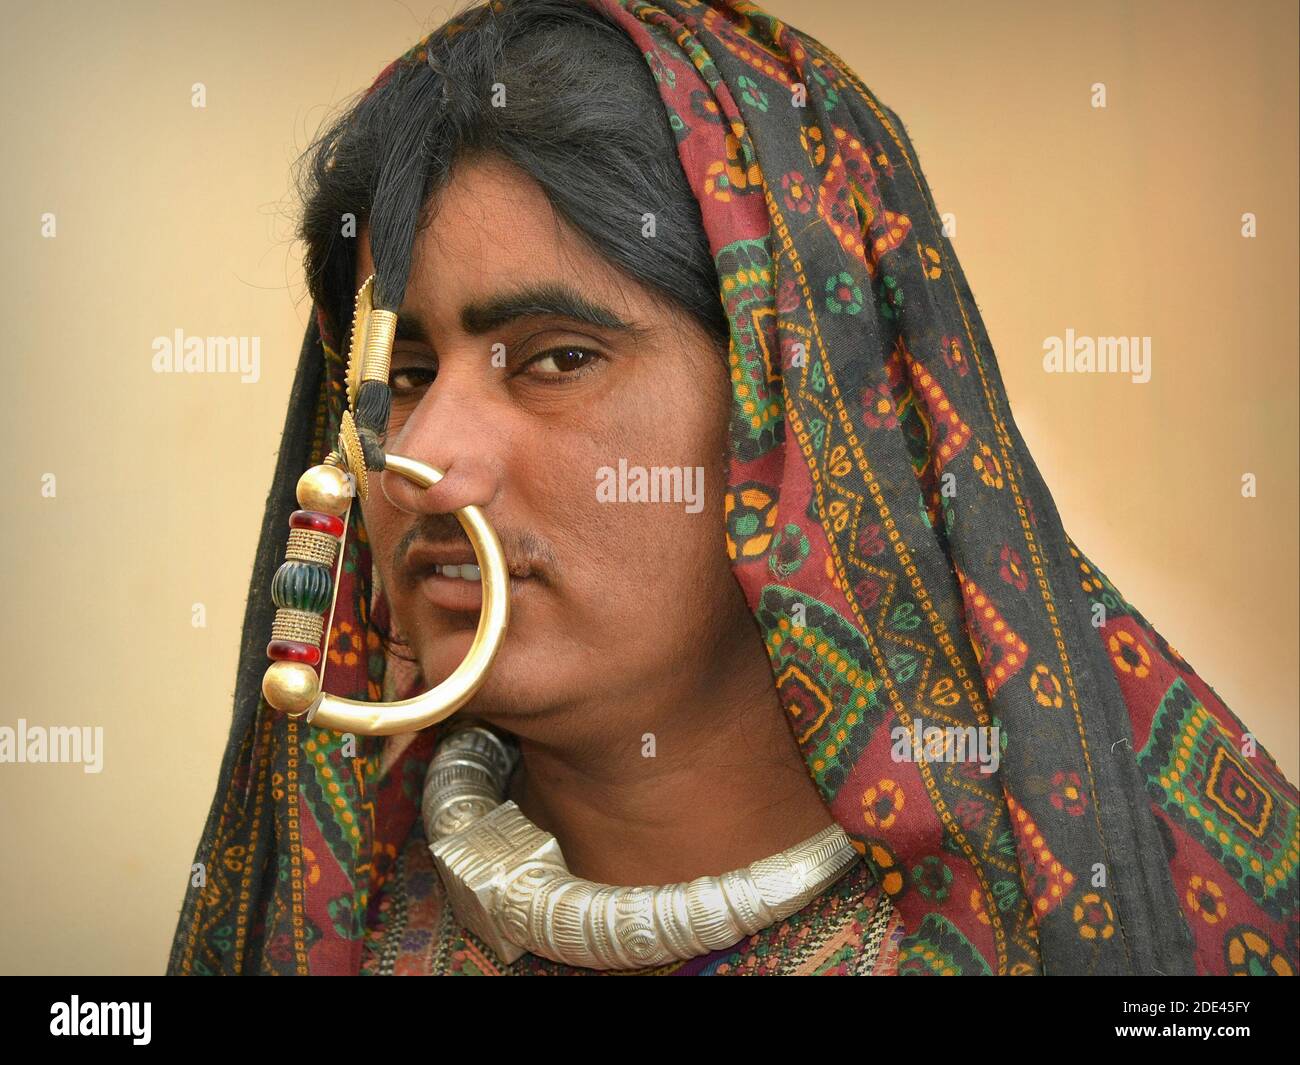 Piercing al naso immagini e fotografie stock ad alta risoluzione - Alamy